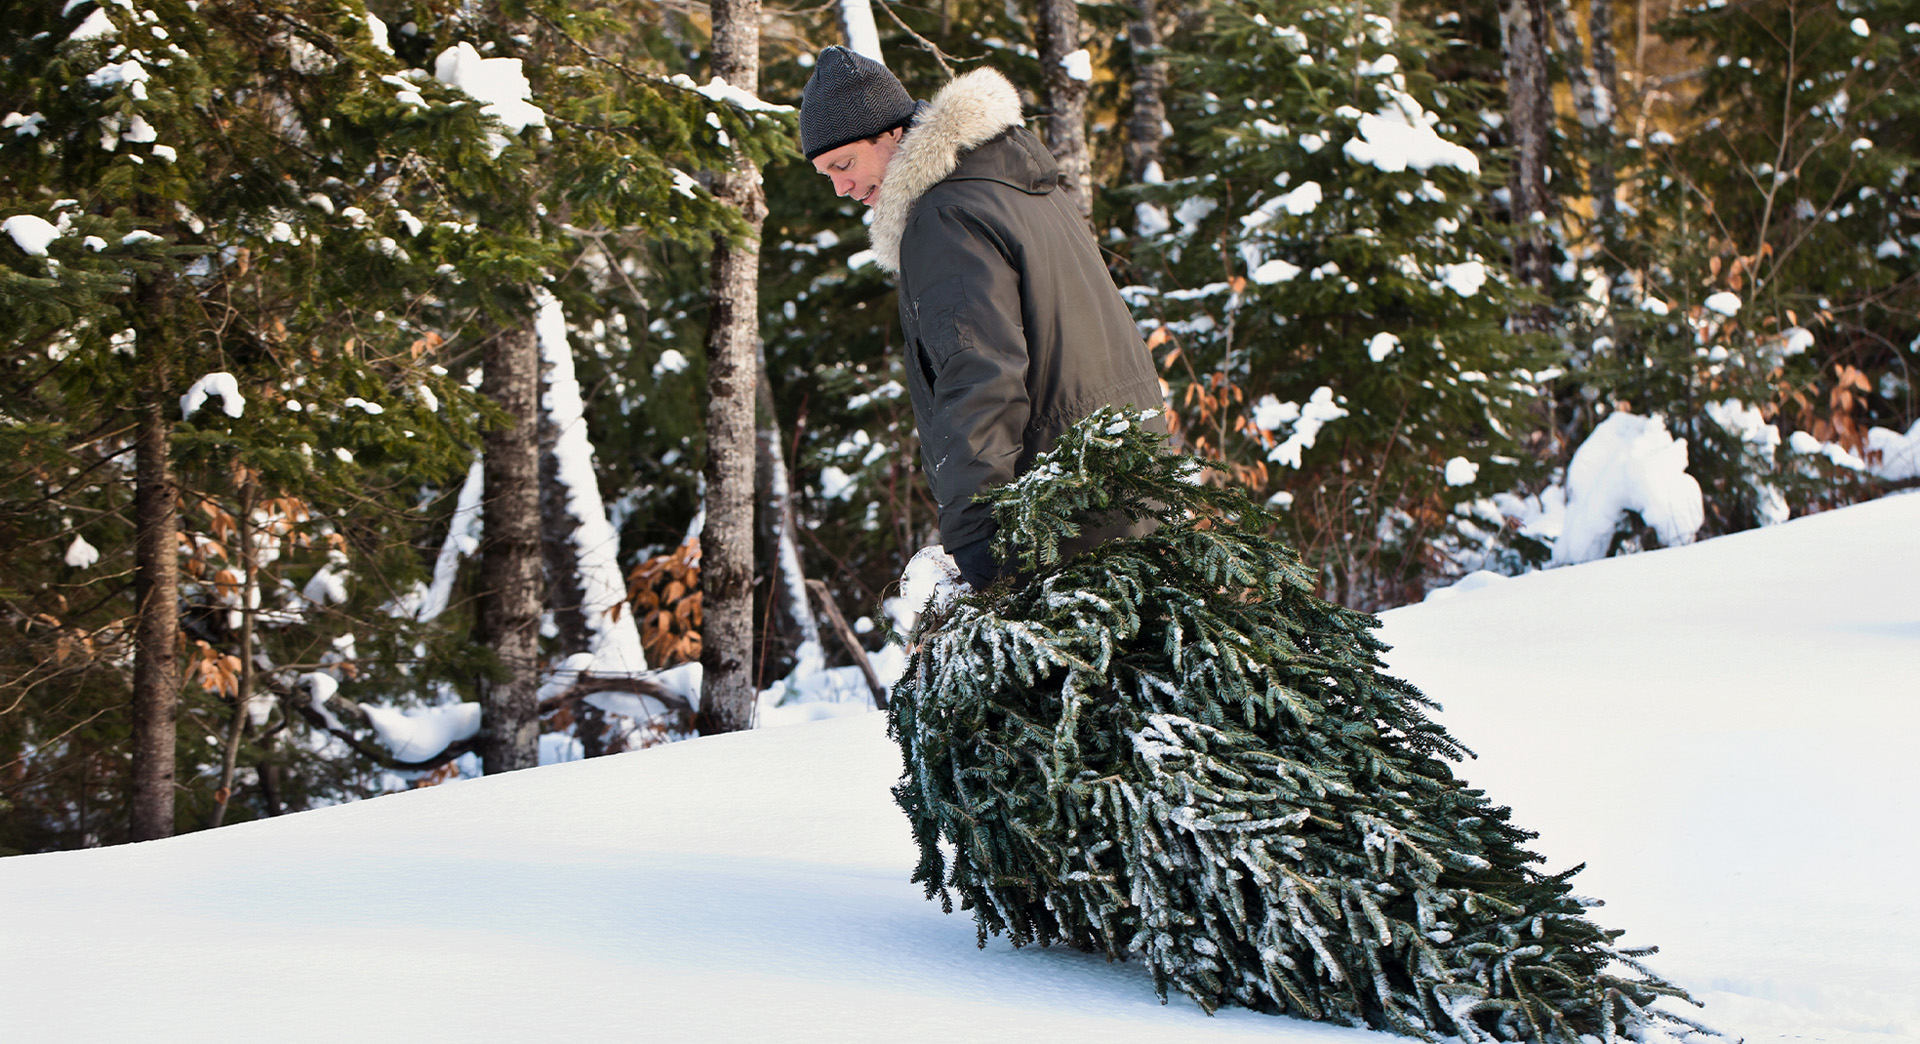 Un hombre tras cortar un árbol de Navidad, lleva un abrigo y gorro mientras que arrastra un árbol por la nieve.